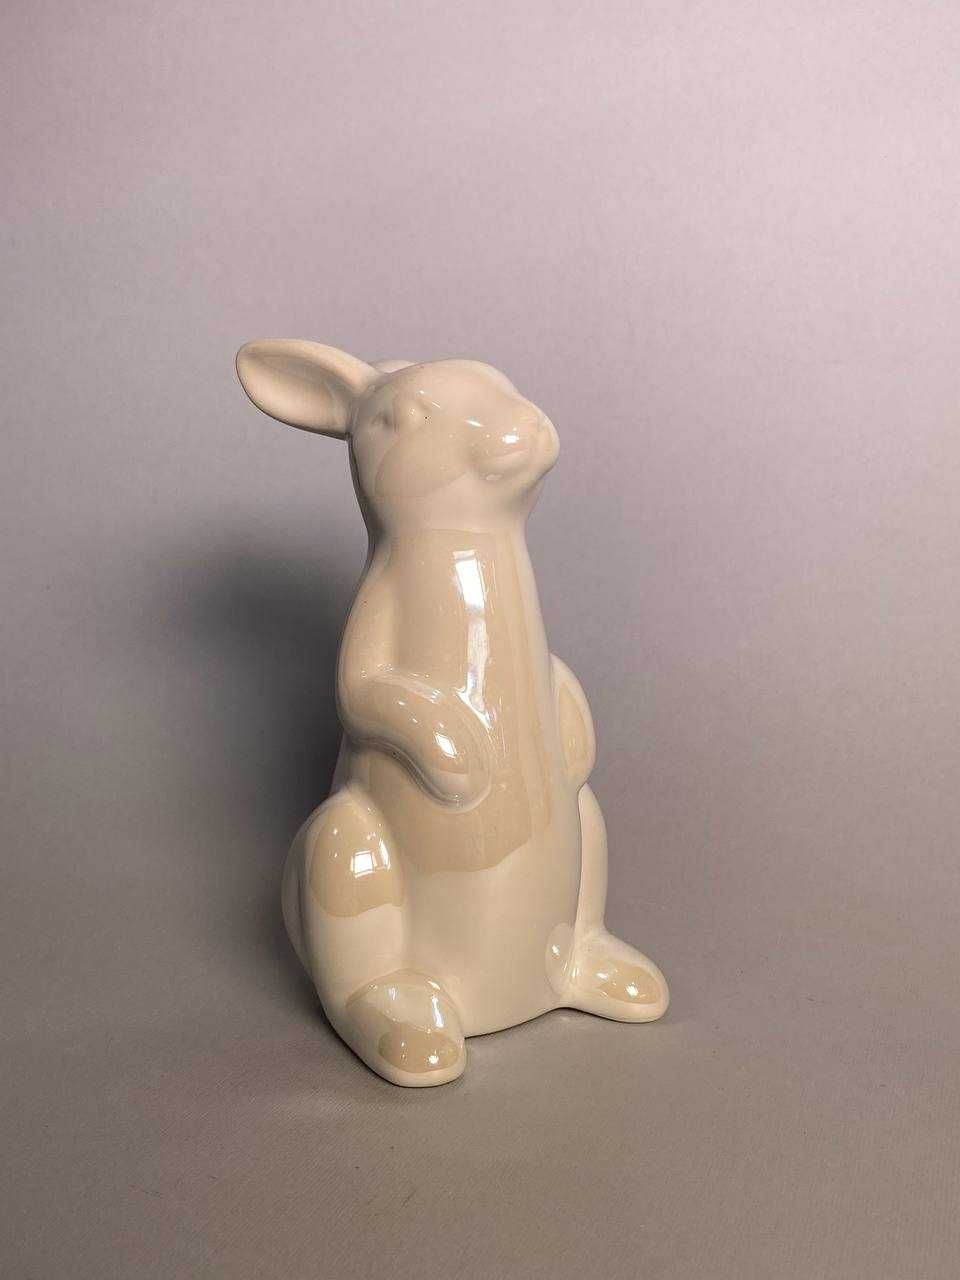 Фігурки: Великодній кролик, зайчик, Пасха, декор, статуетка